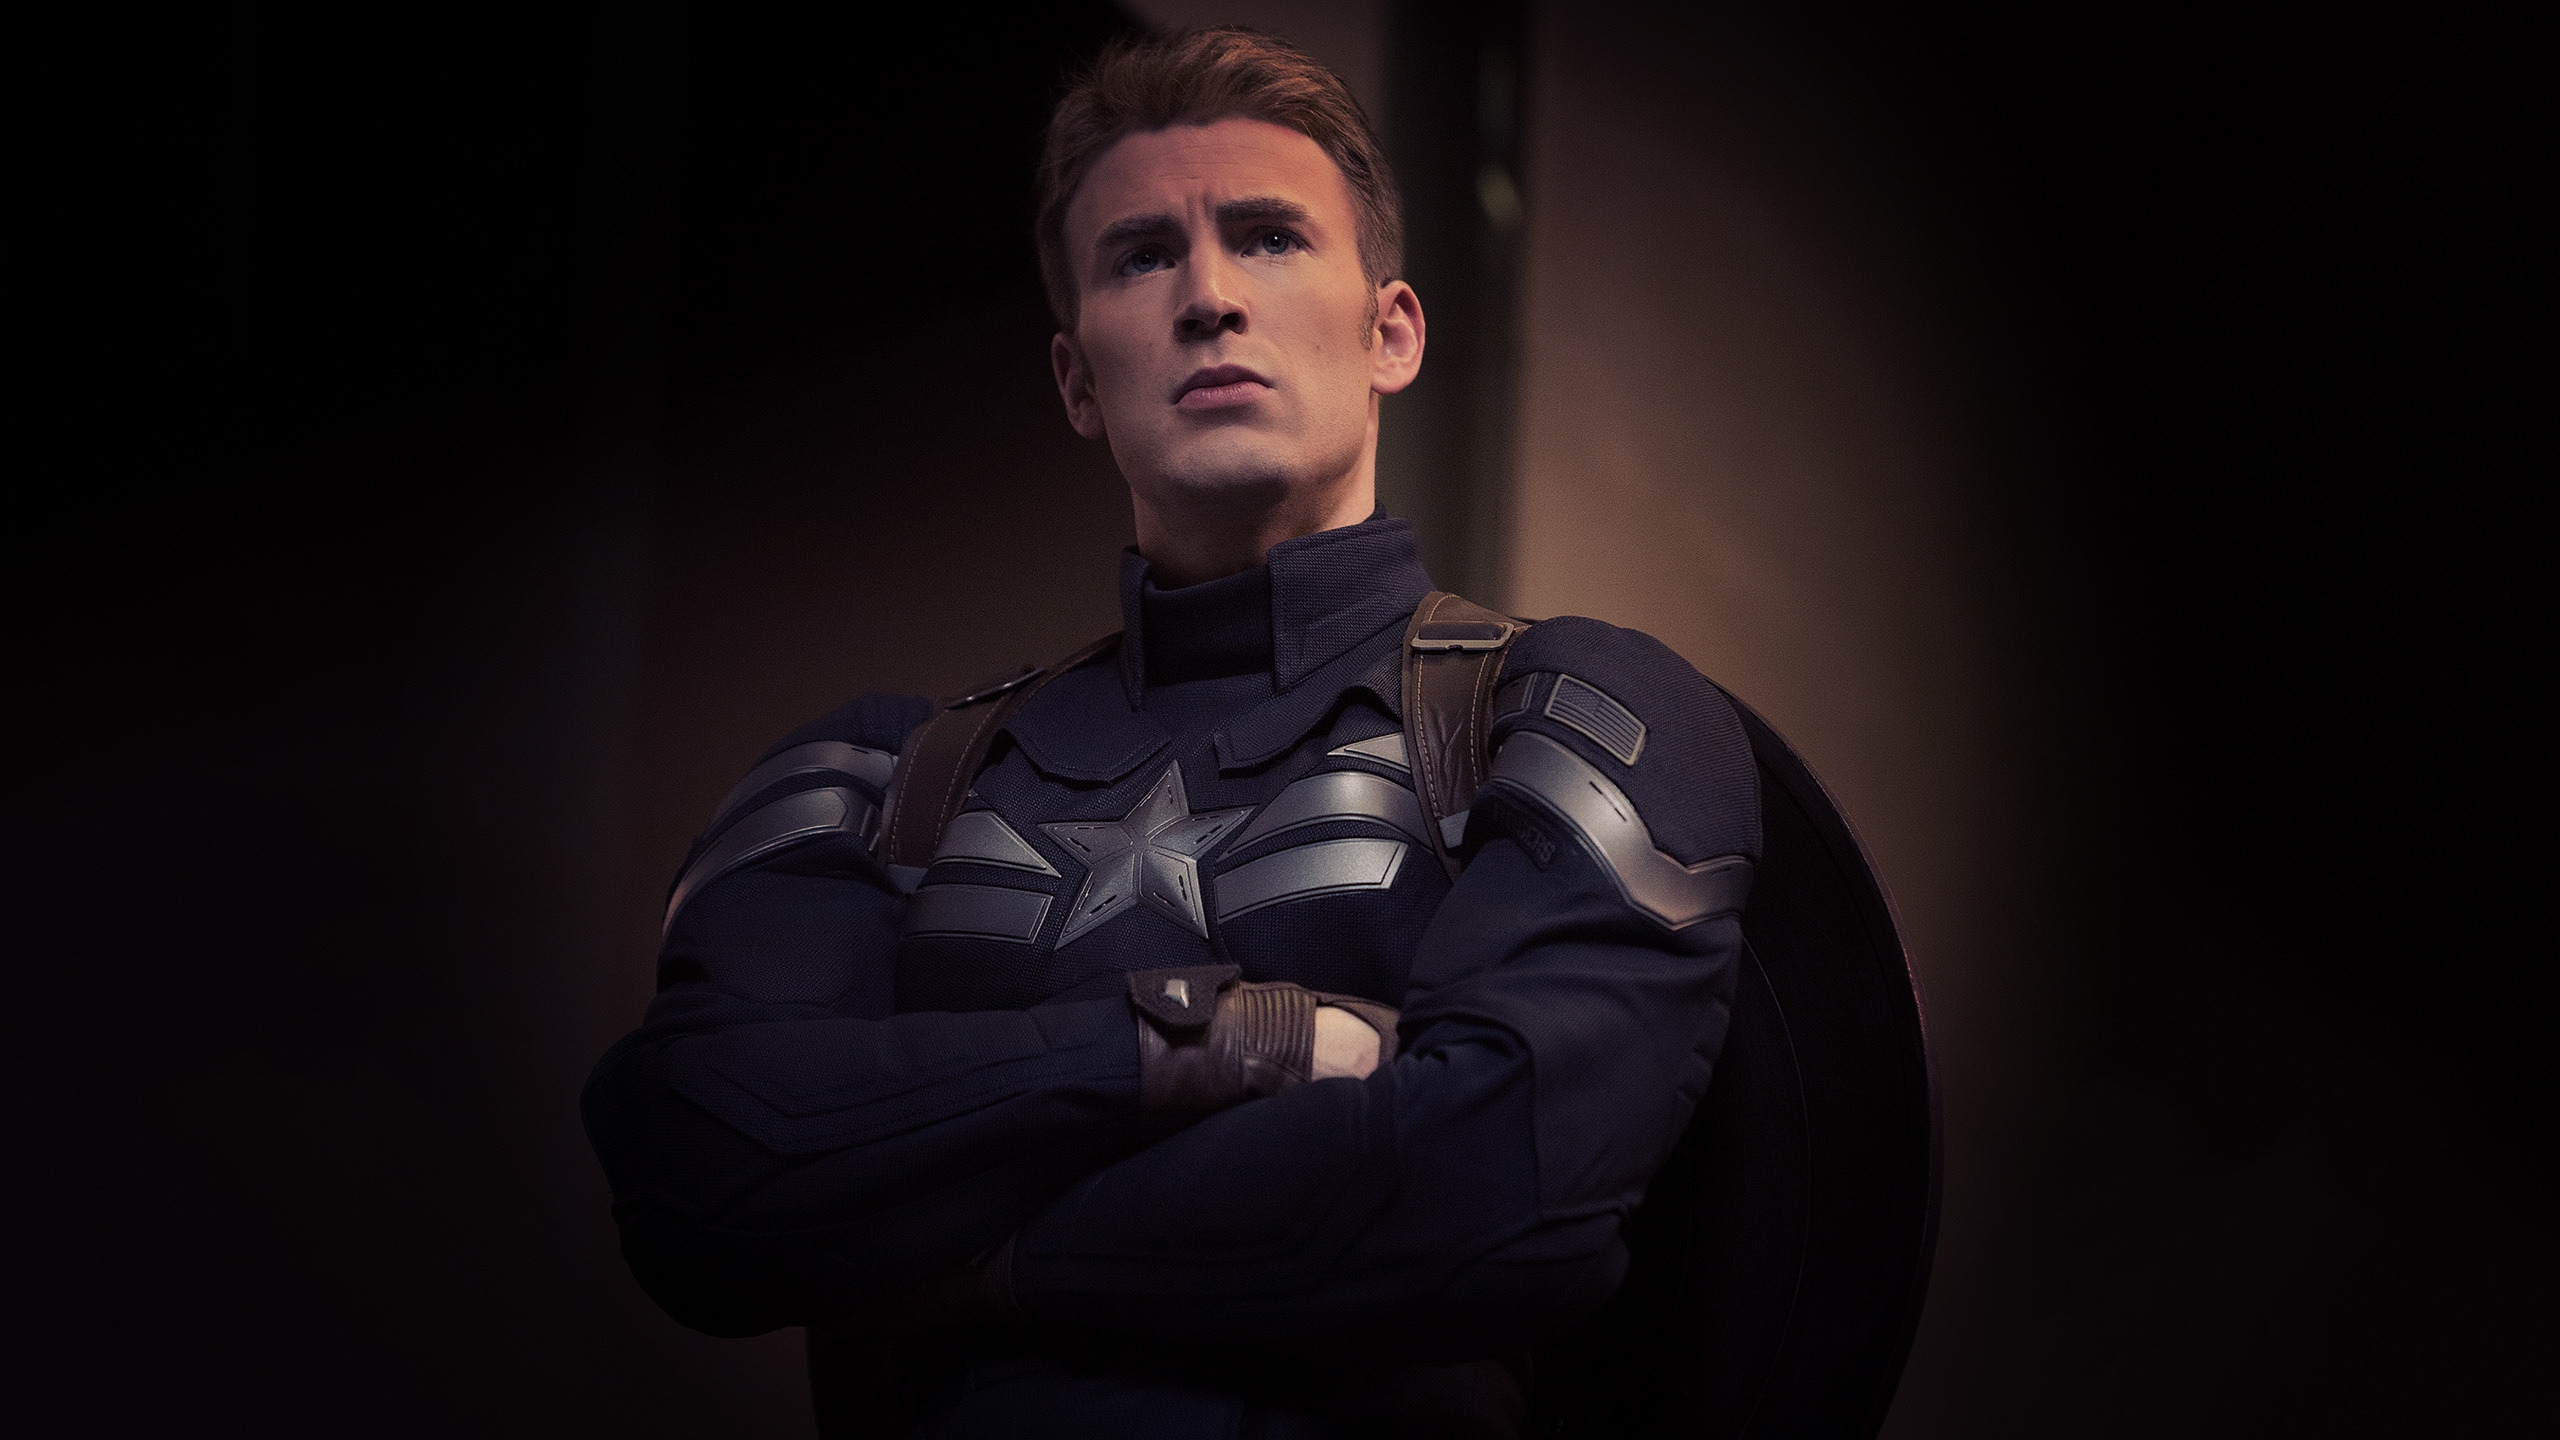 Captain America Marvel for 2560x1440 HDTV resolution